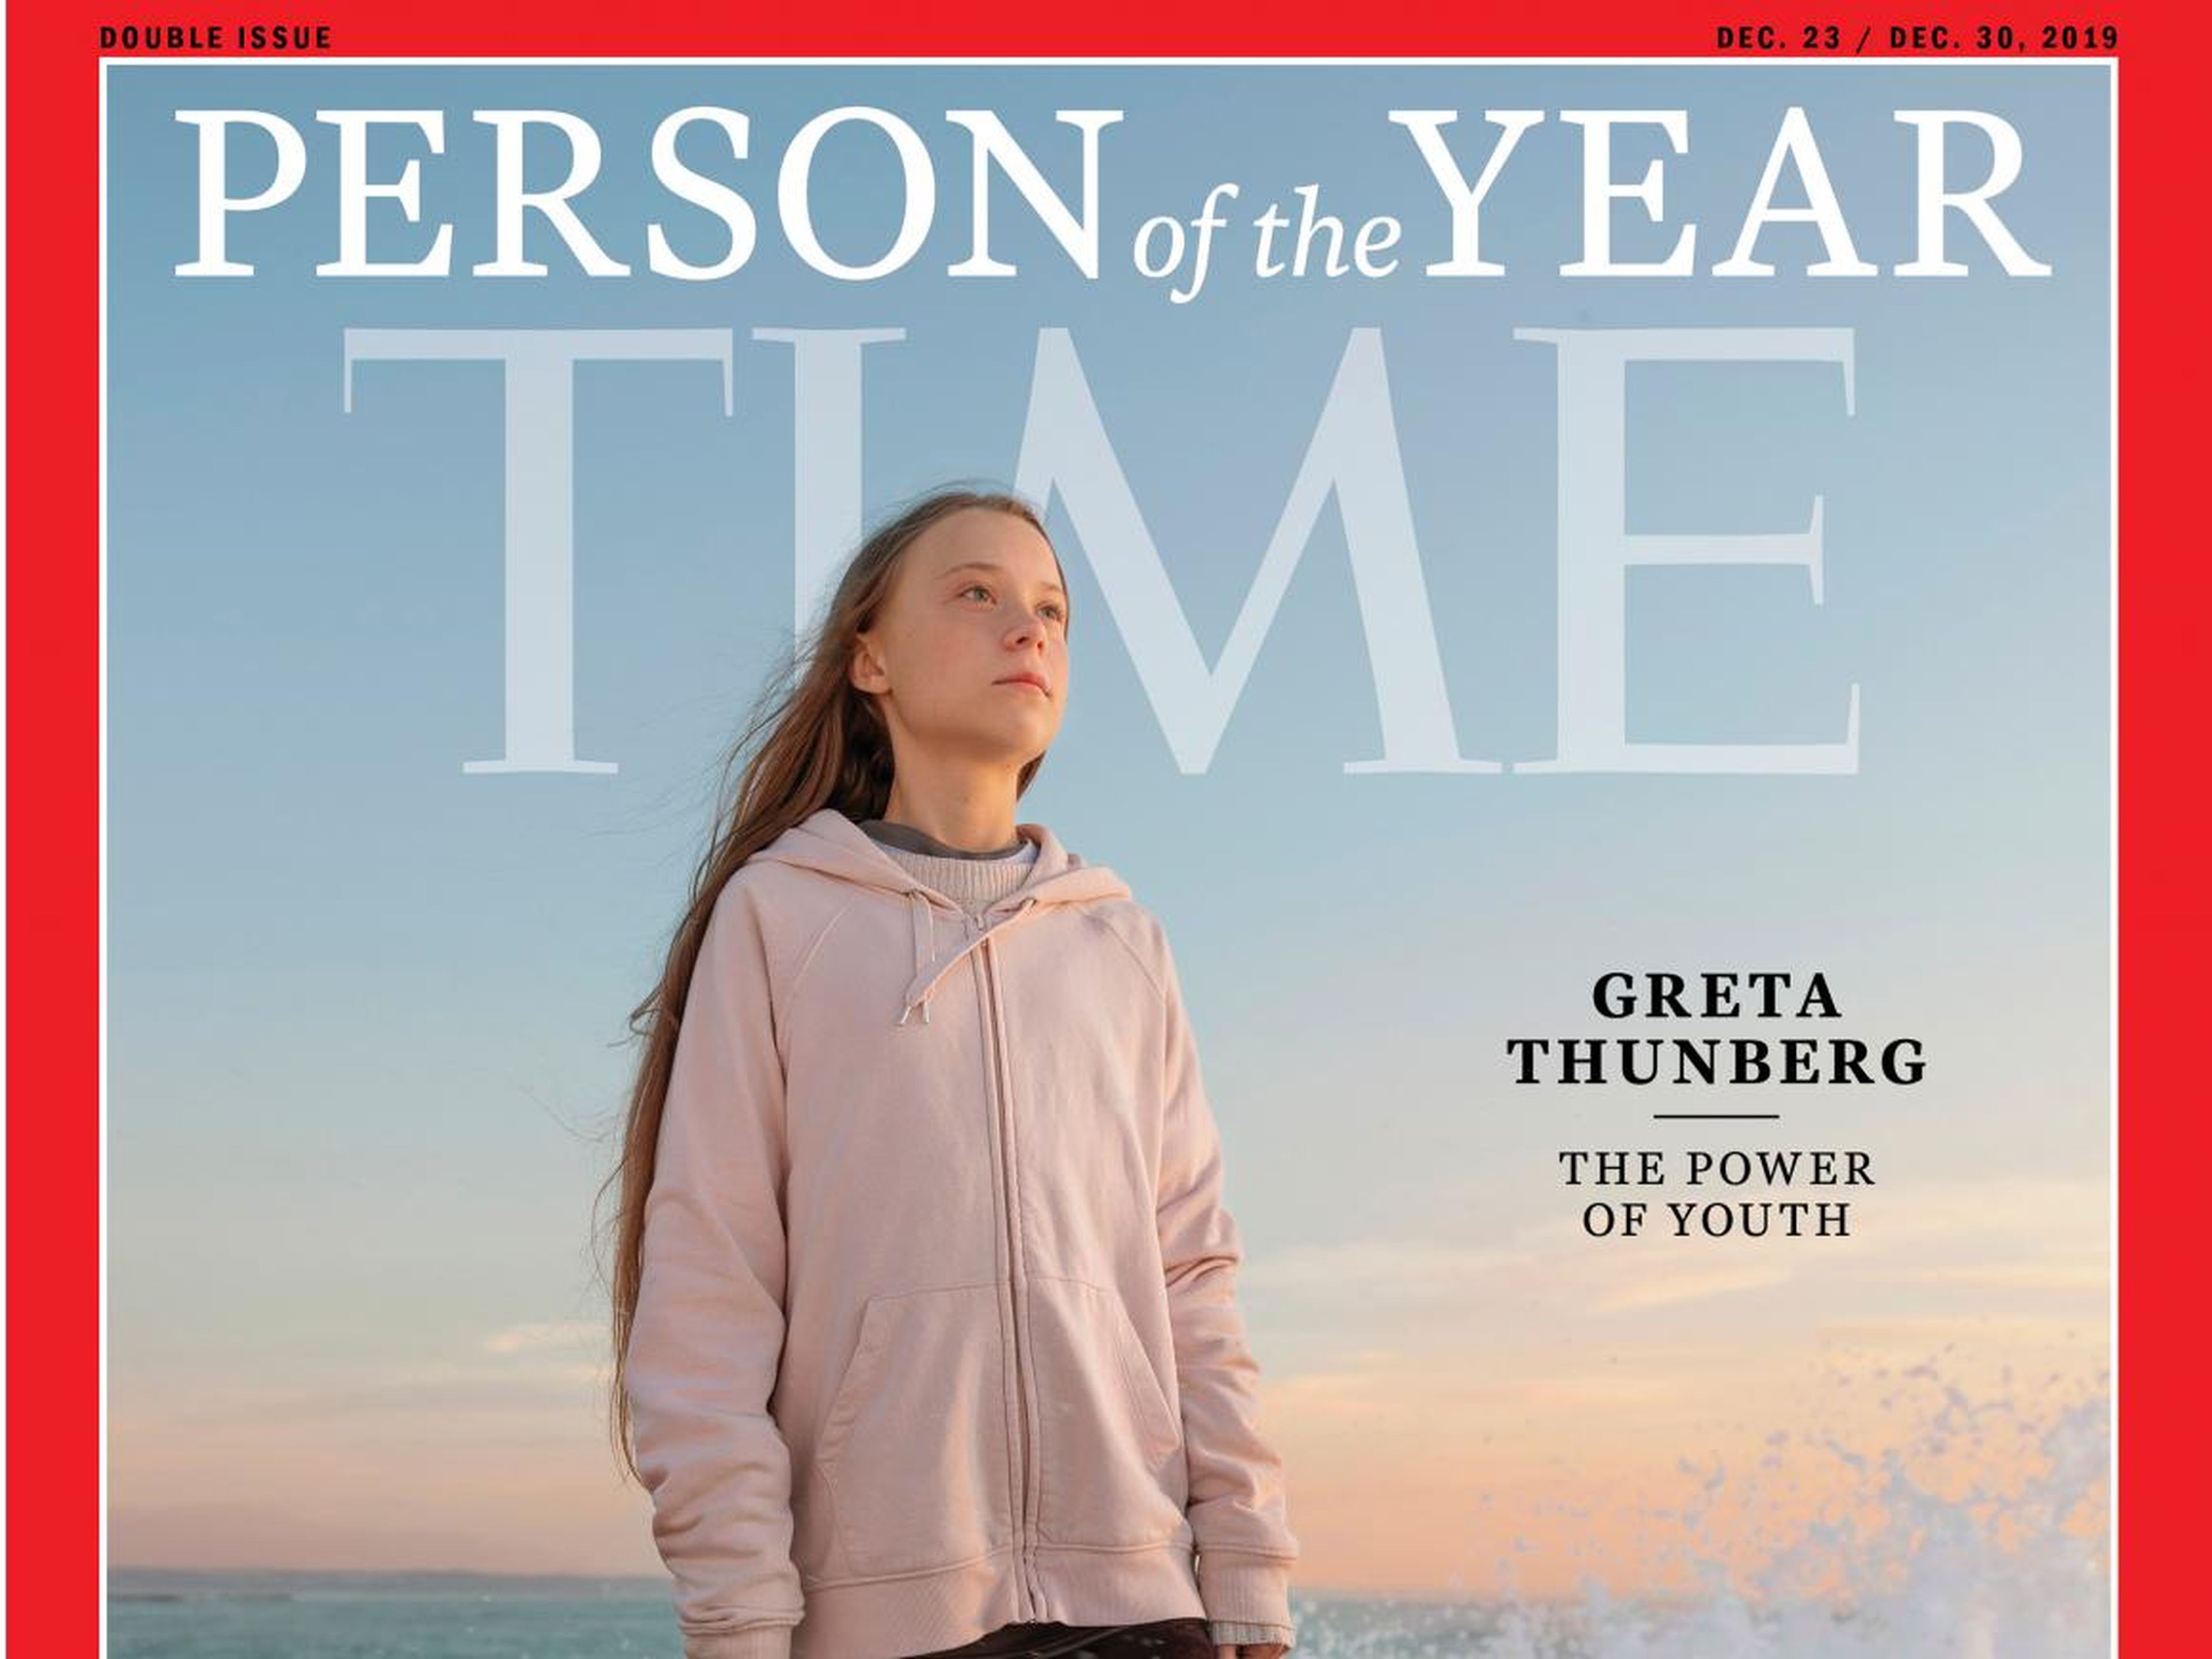 La portada de la revista Time con Greta Thunberg como la persona del año de 2019.